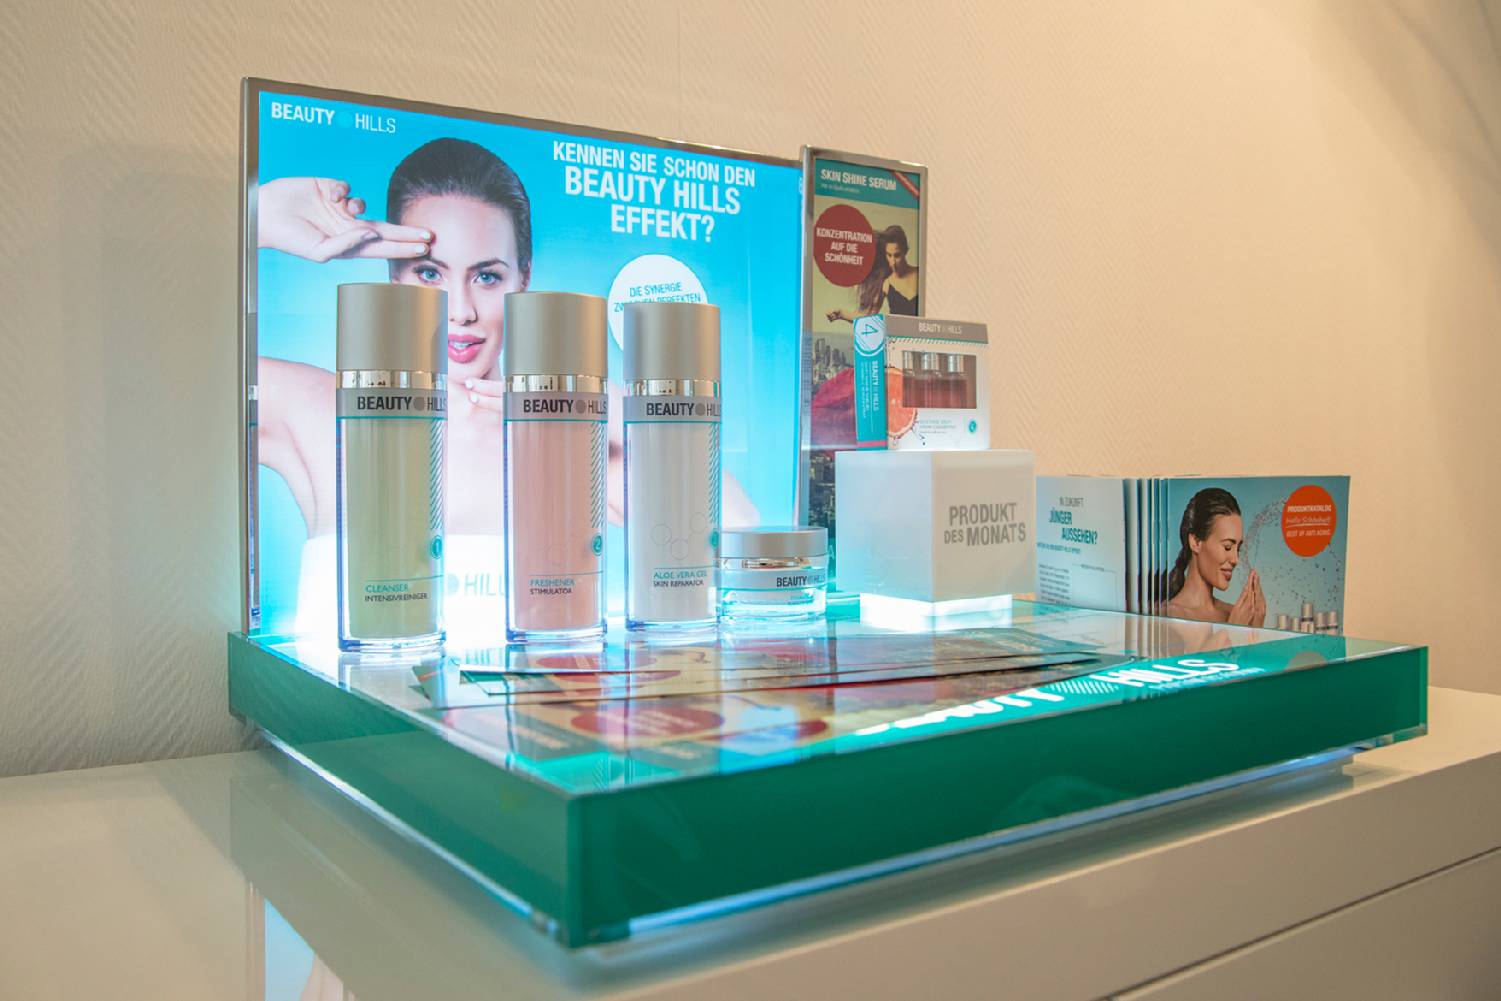 Kosmetikstudio Beauty Mosaic in Frankfurt, Gesichtsbehandlungen, Gesichtspflege, Kosmetikprodukte